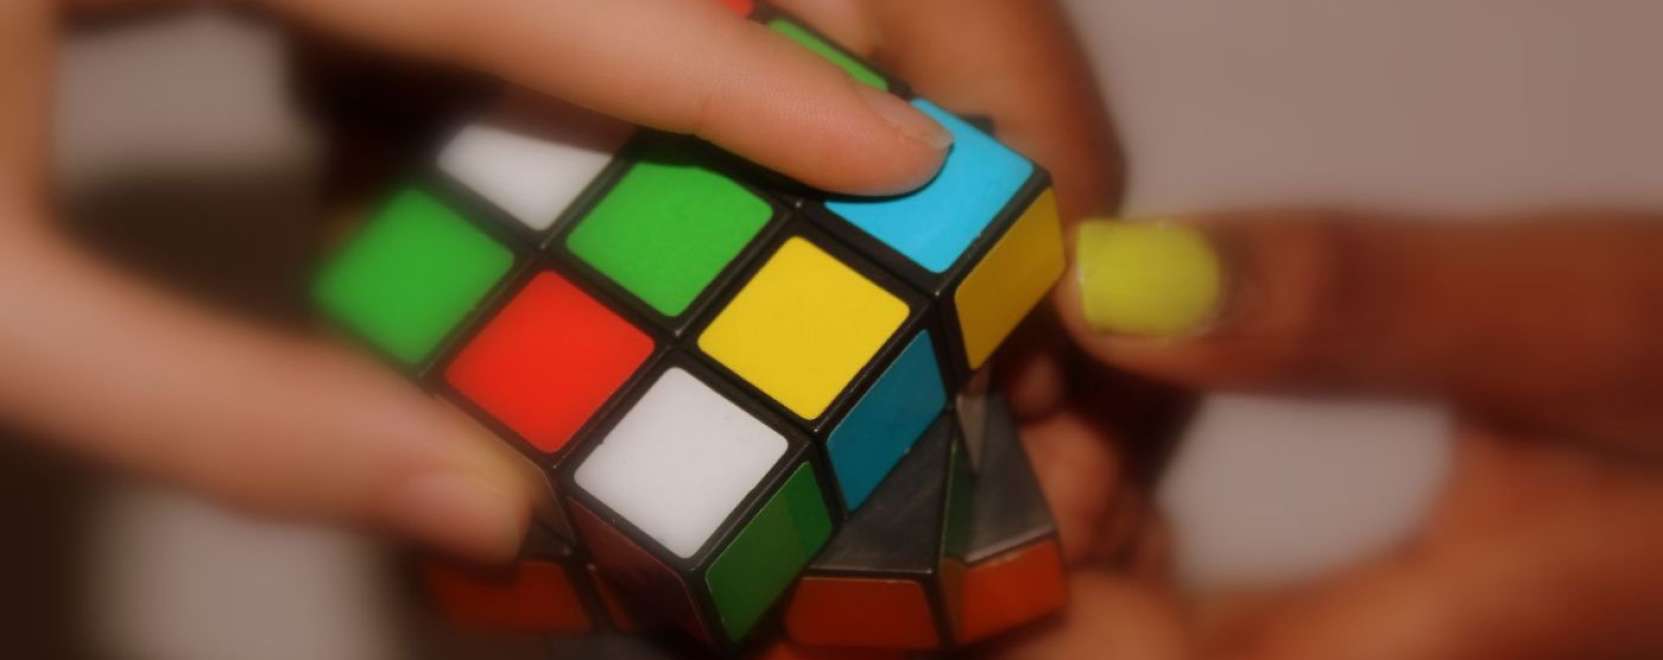 Gondolatokkal irányítható a virtuális Rubik-kocka